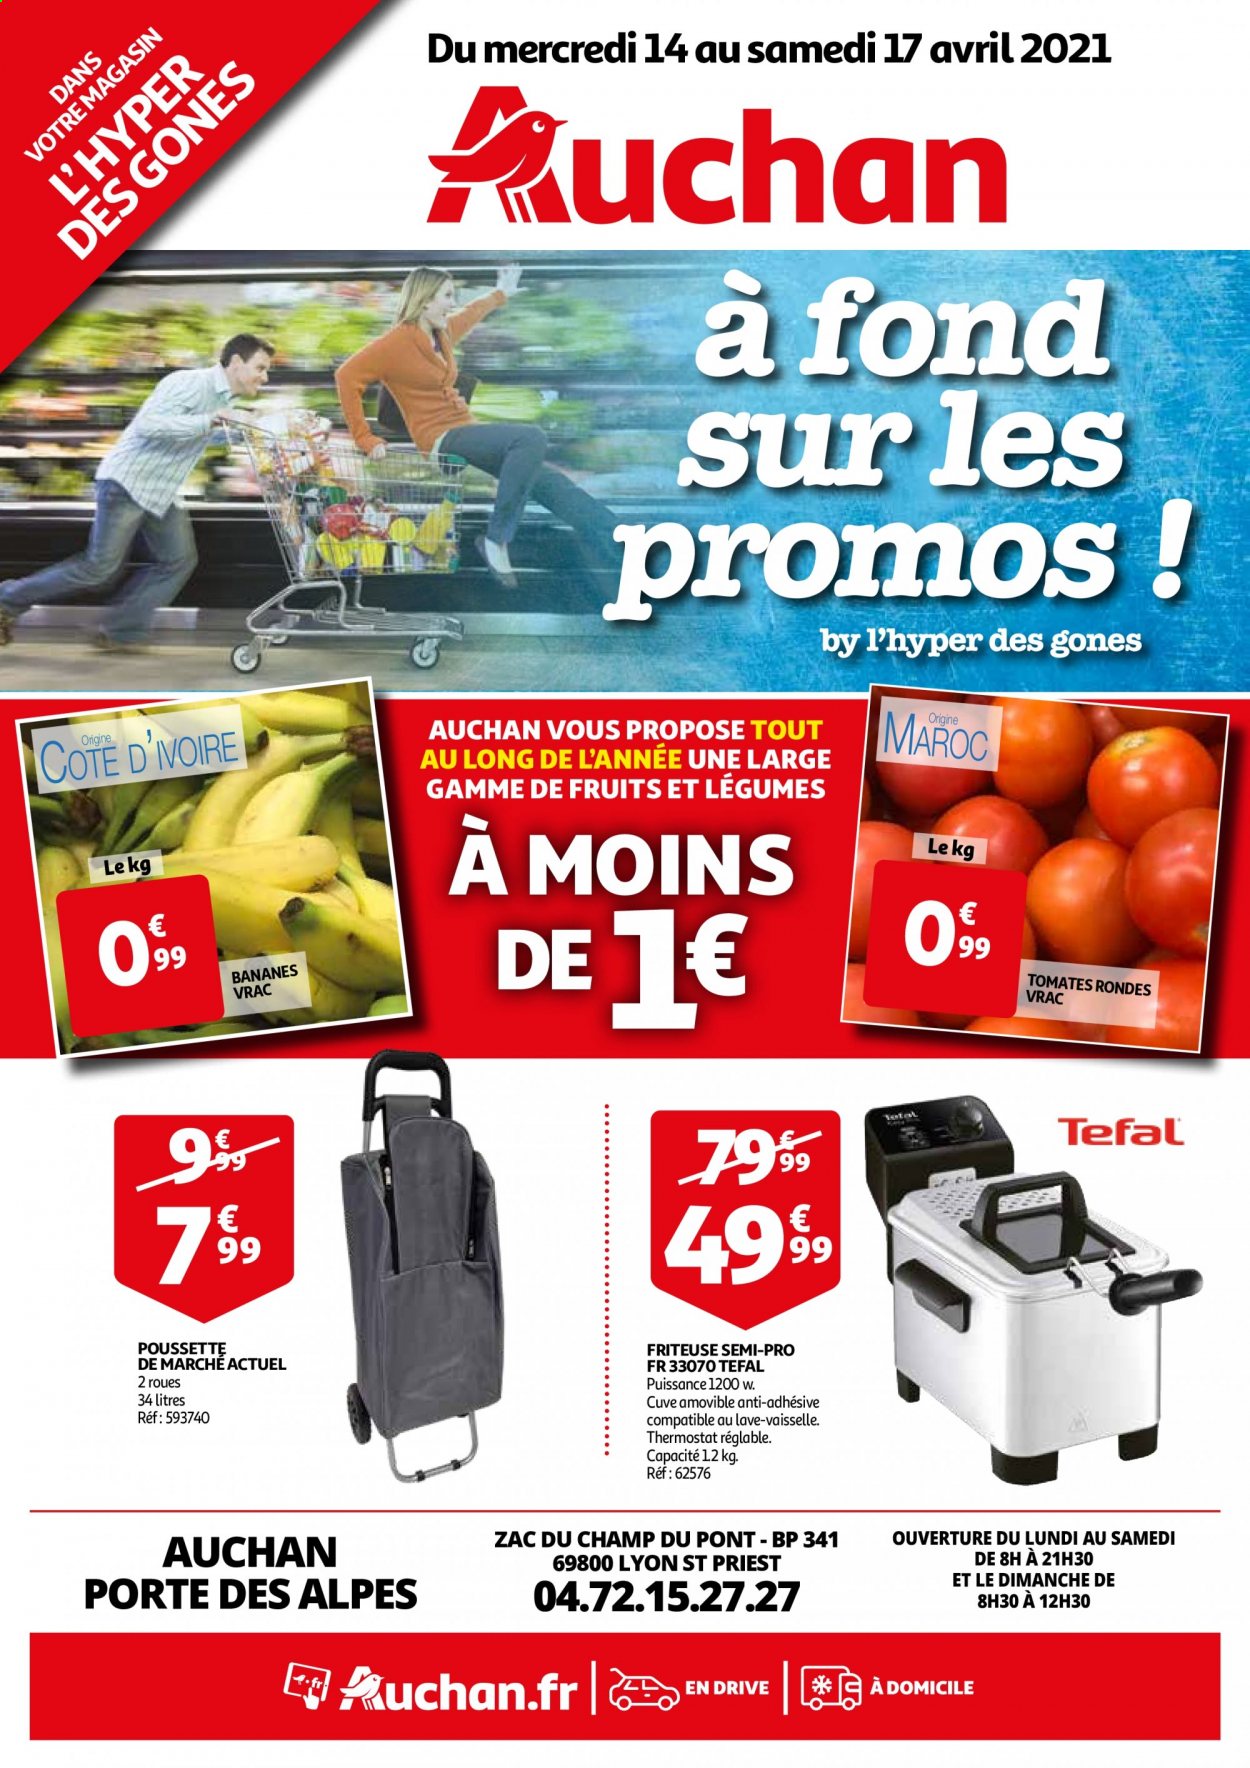 thumbnail - Catalogue Auchan - 14/04/2021 - 17/04/2021 - Produits soldés - Tefal, bananes, tomates, friteuse, poussette. Page 1.